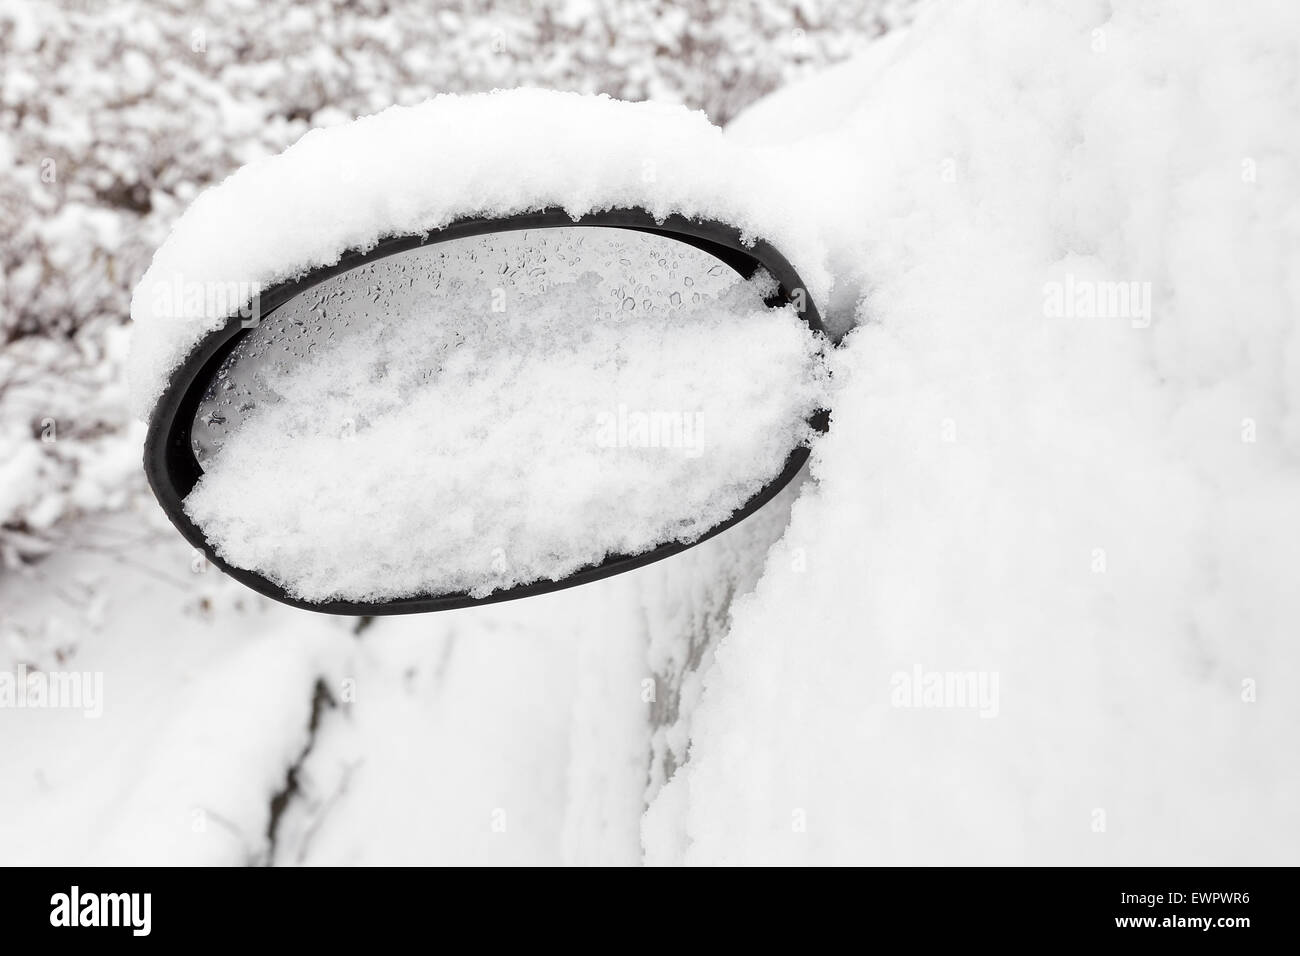 Miroir de voiture couvert de neige en hiver Banque D'Images